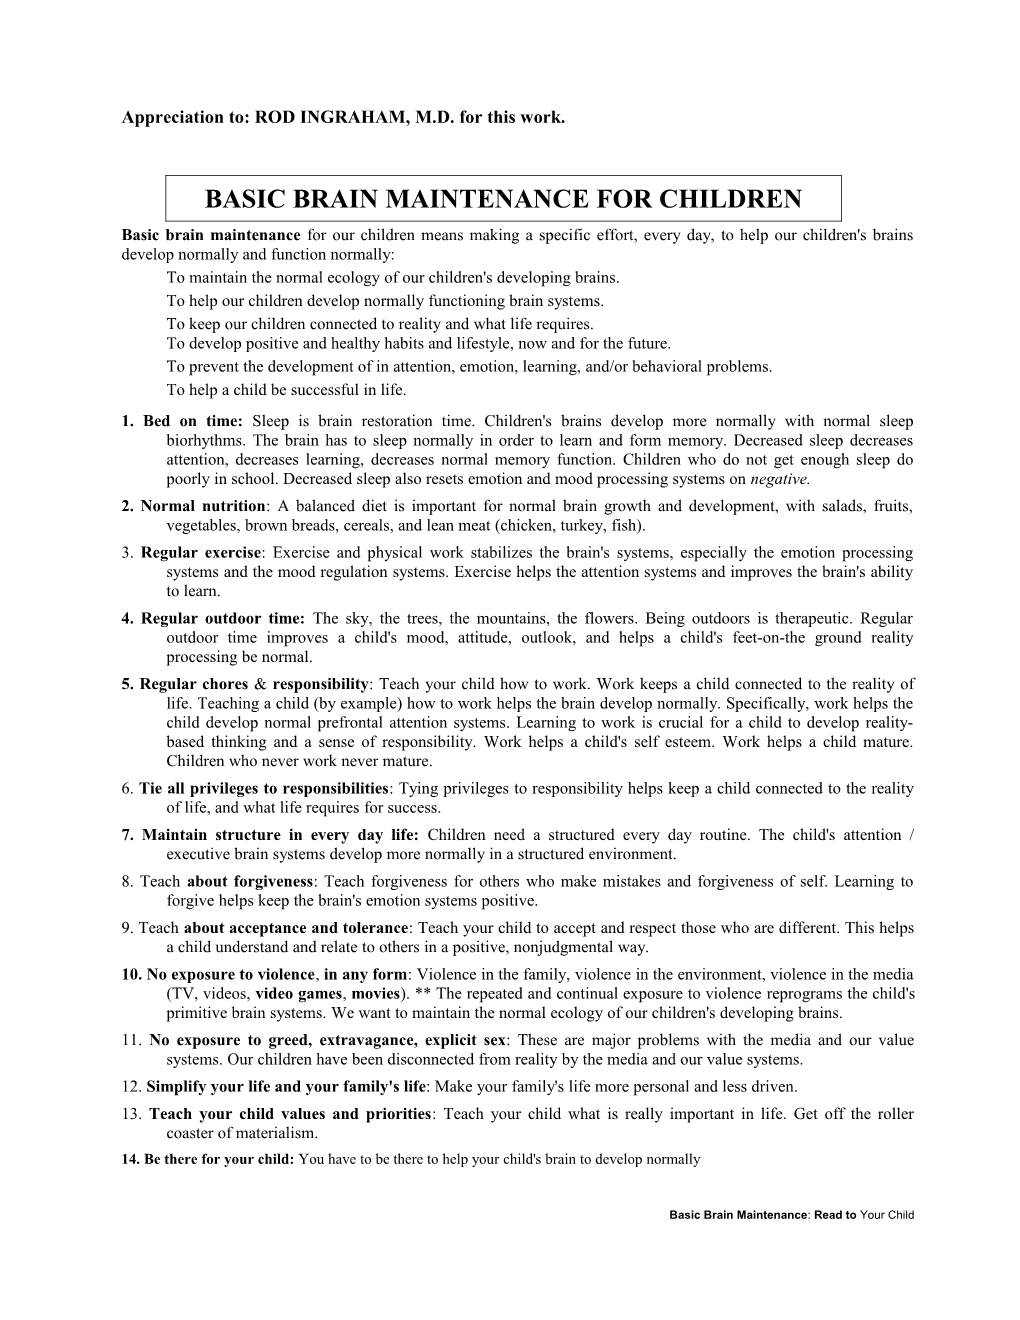 Basic Brain Maintenance for Children